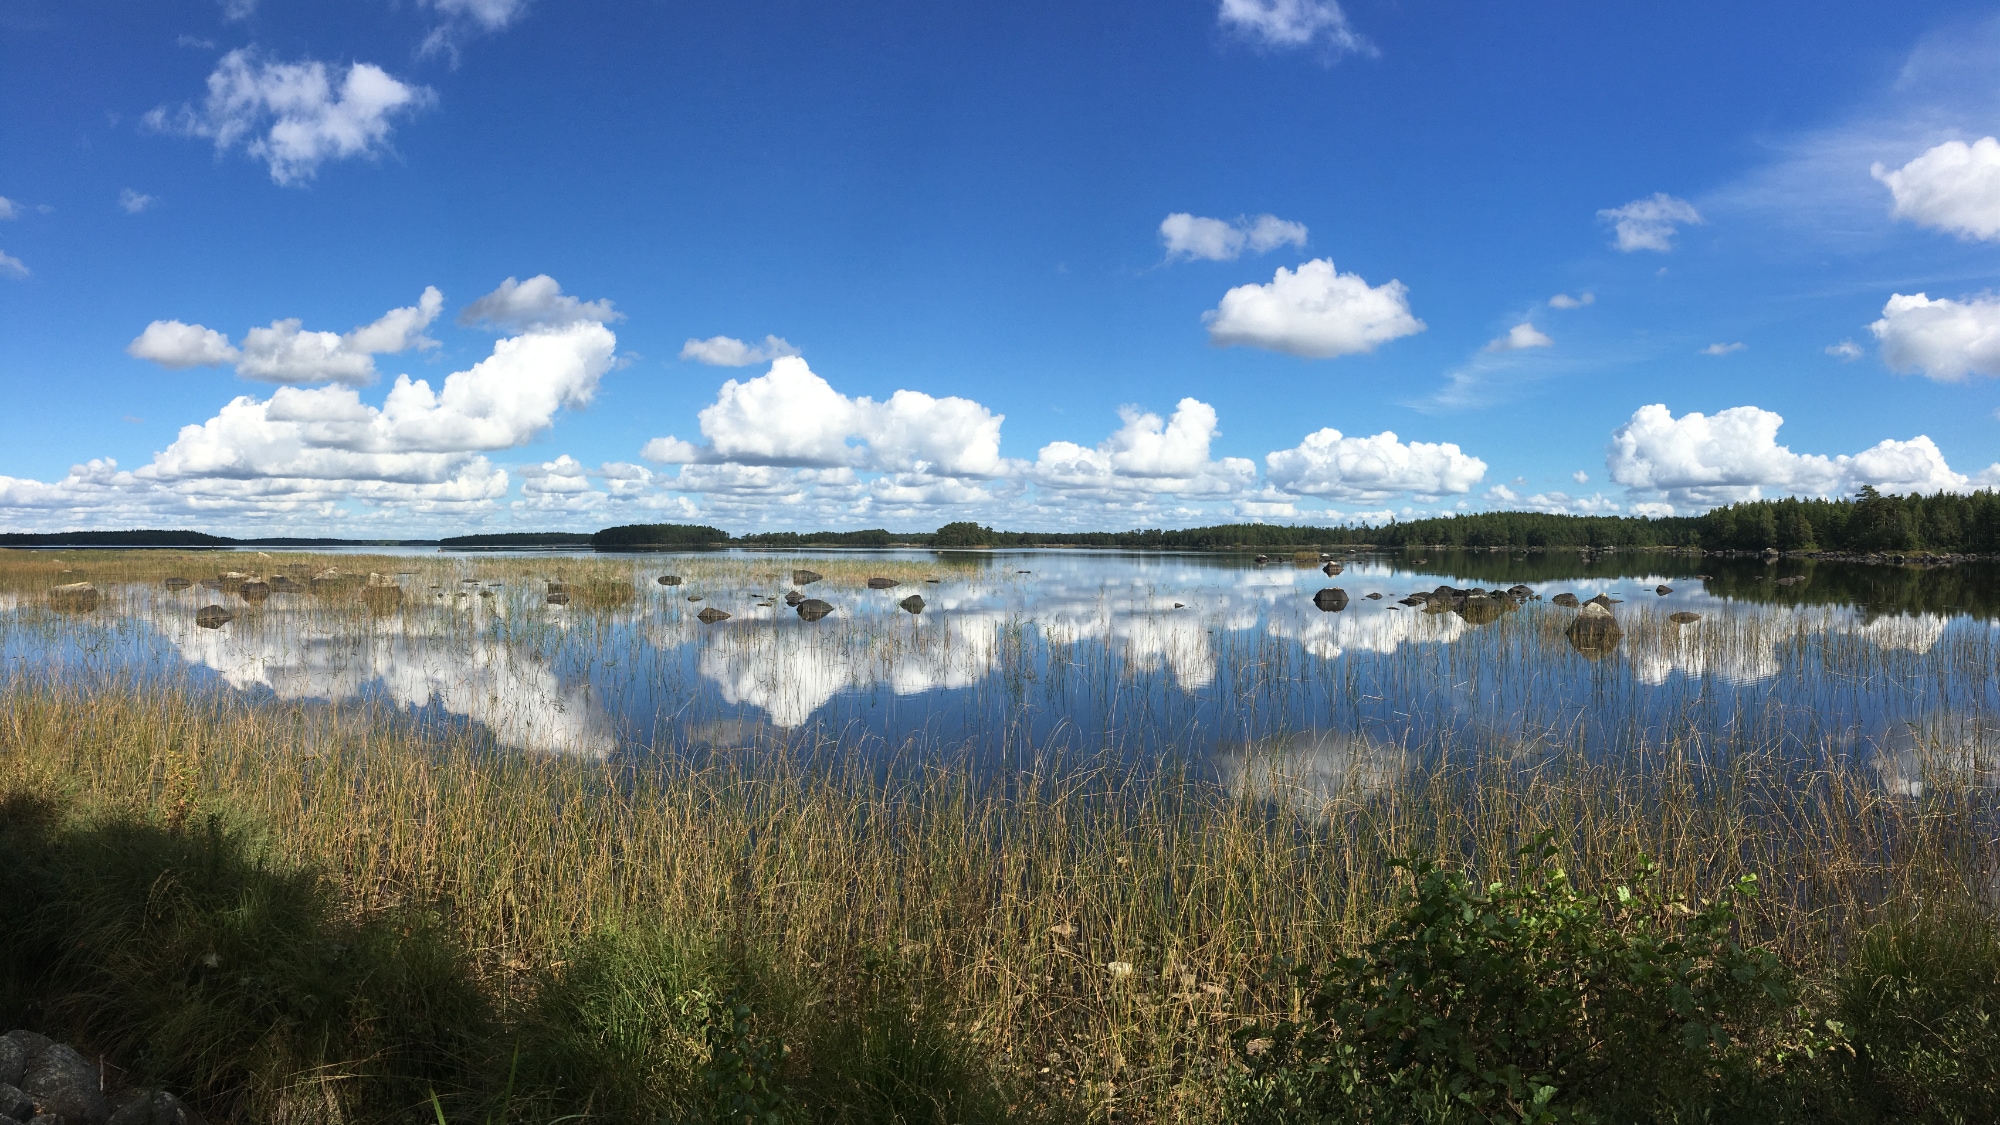 A photo taken at the lake Åsnen in Småland.